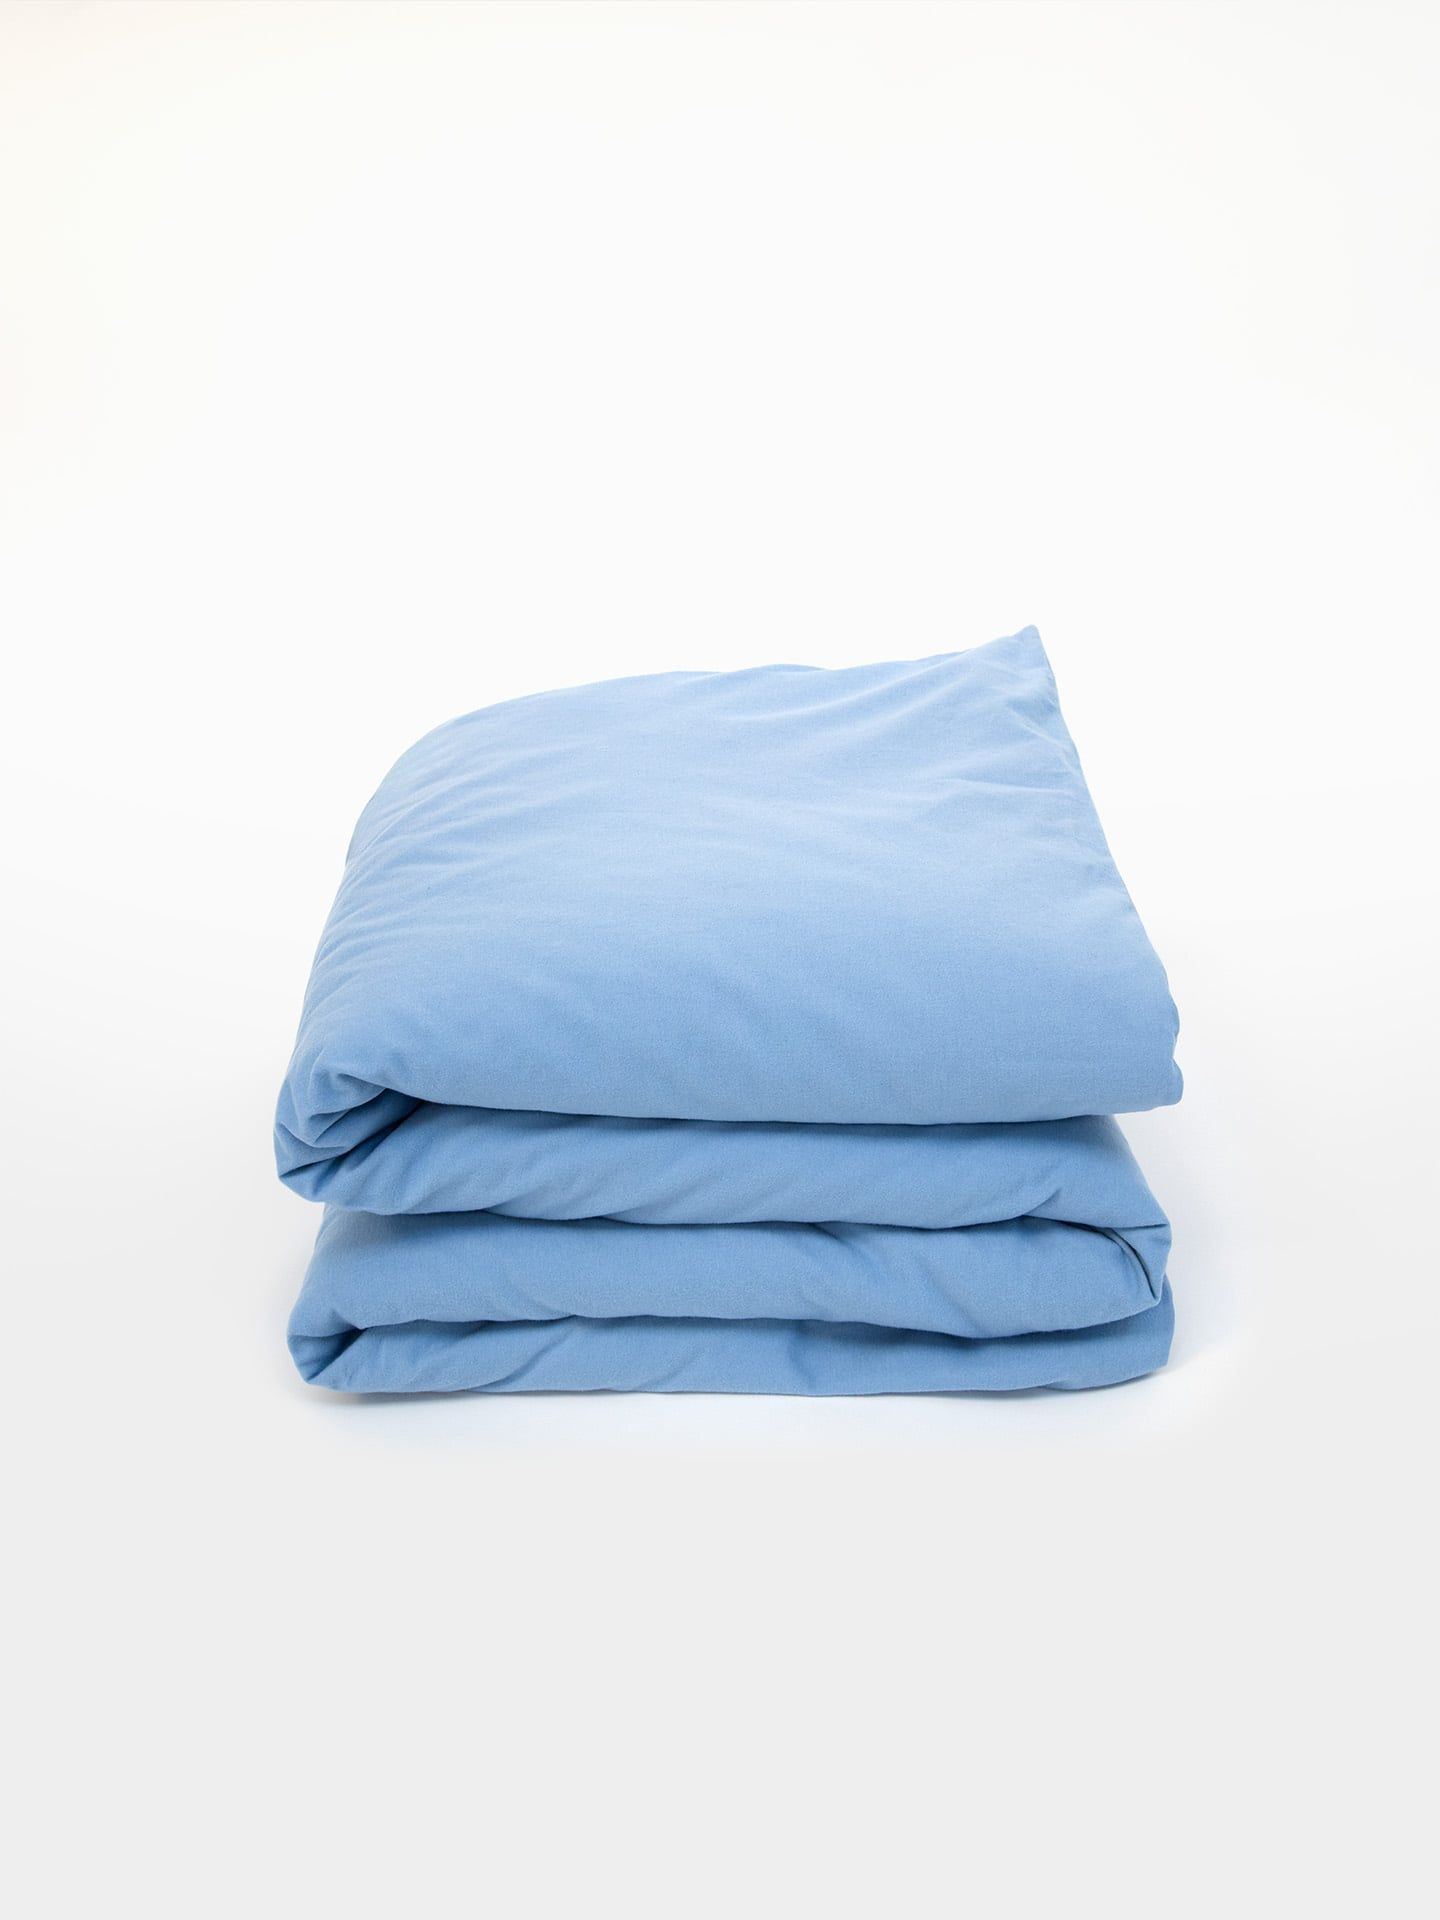 Cotton Select Bettdeckenbezug himmelblau